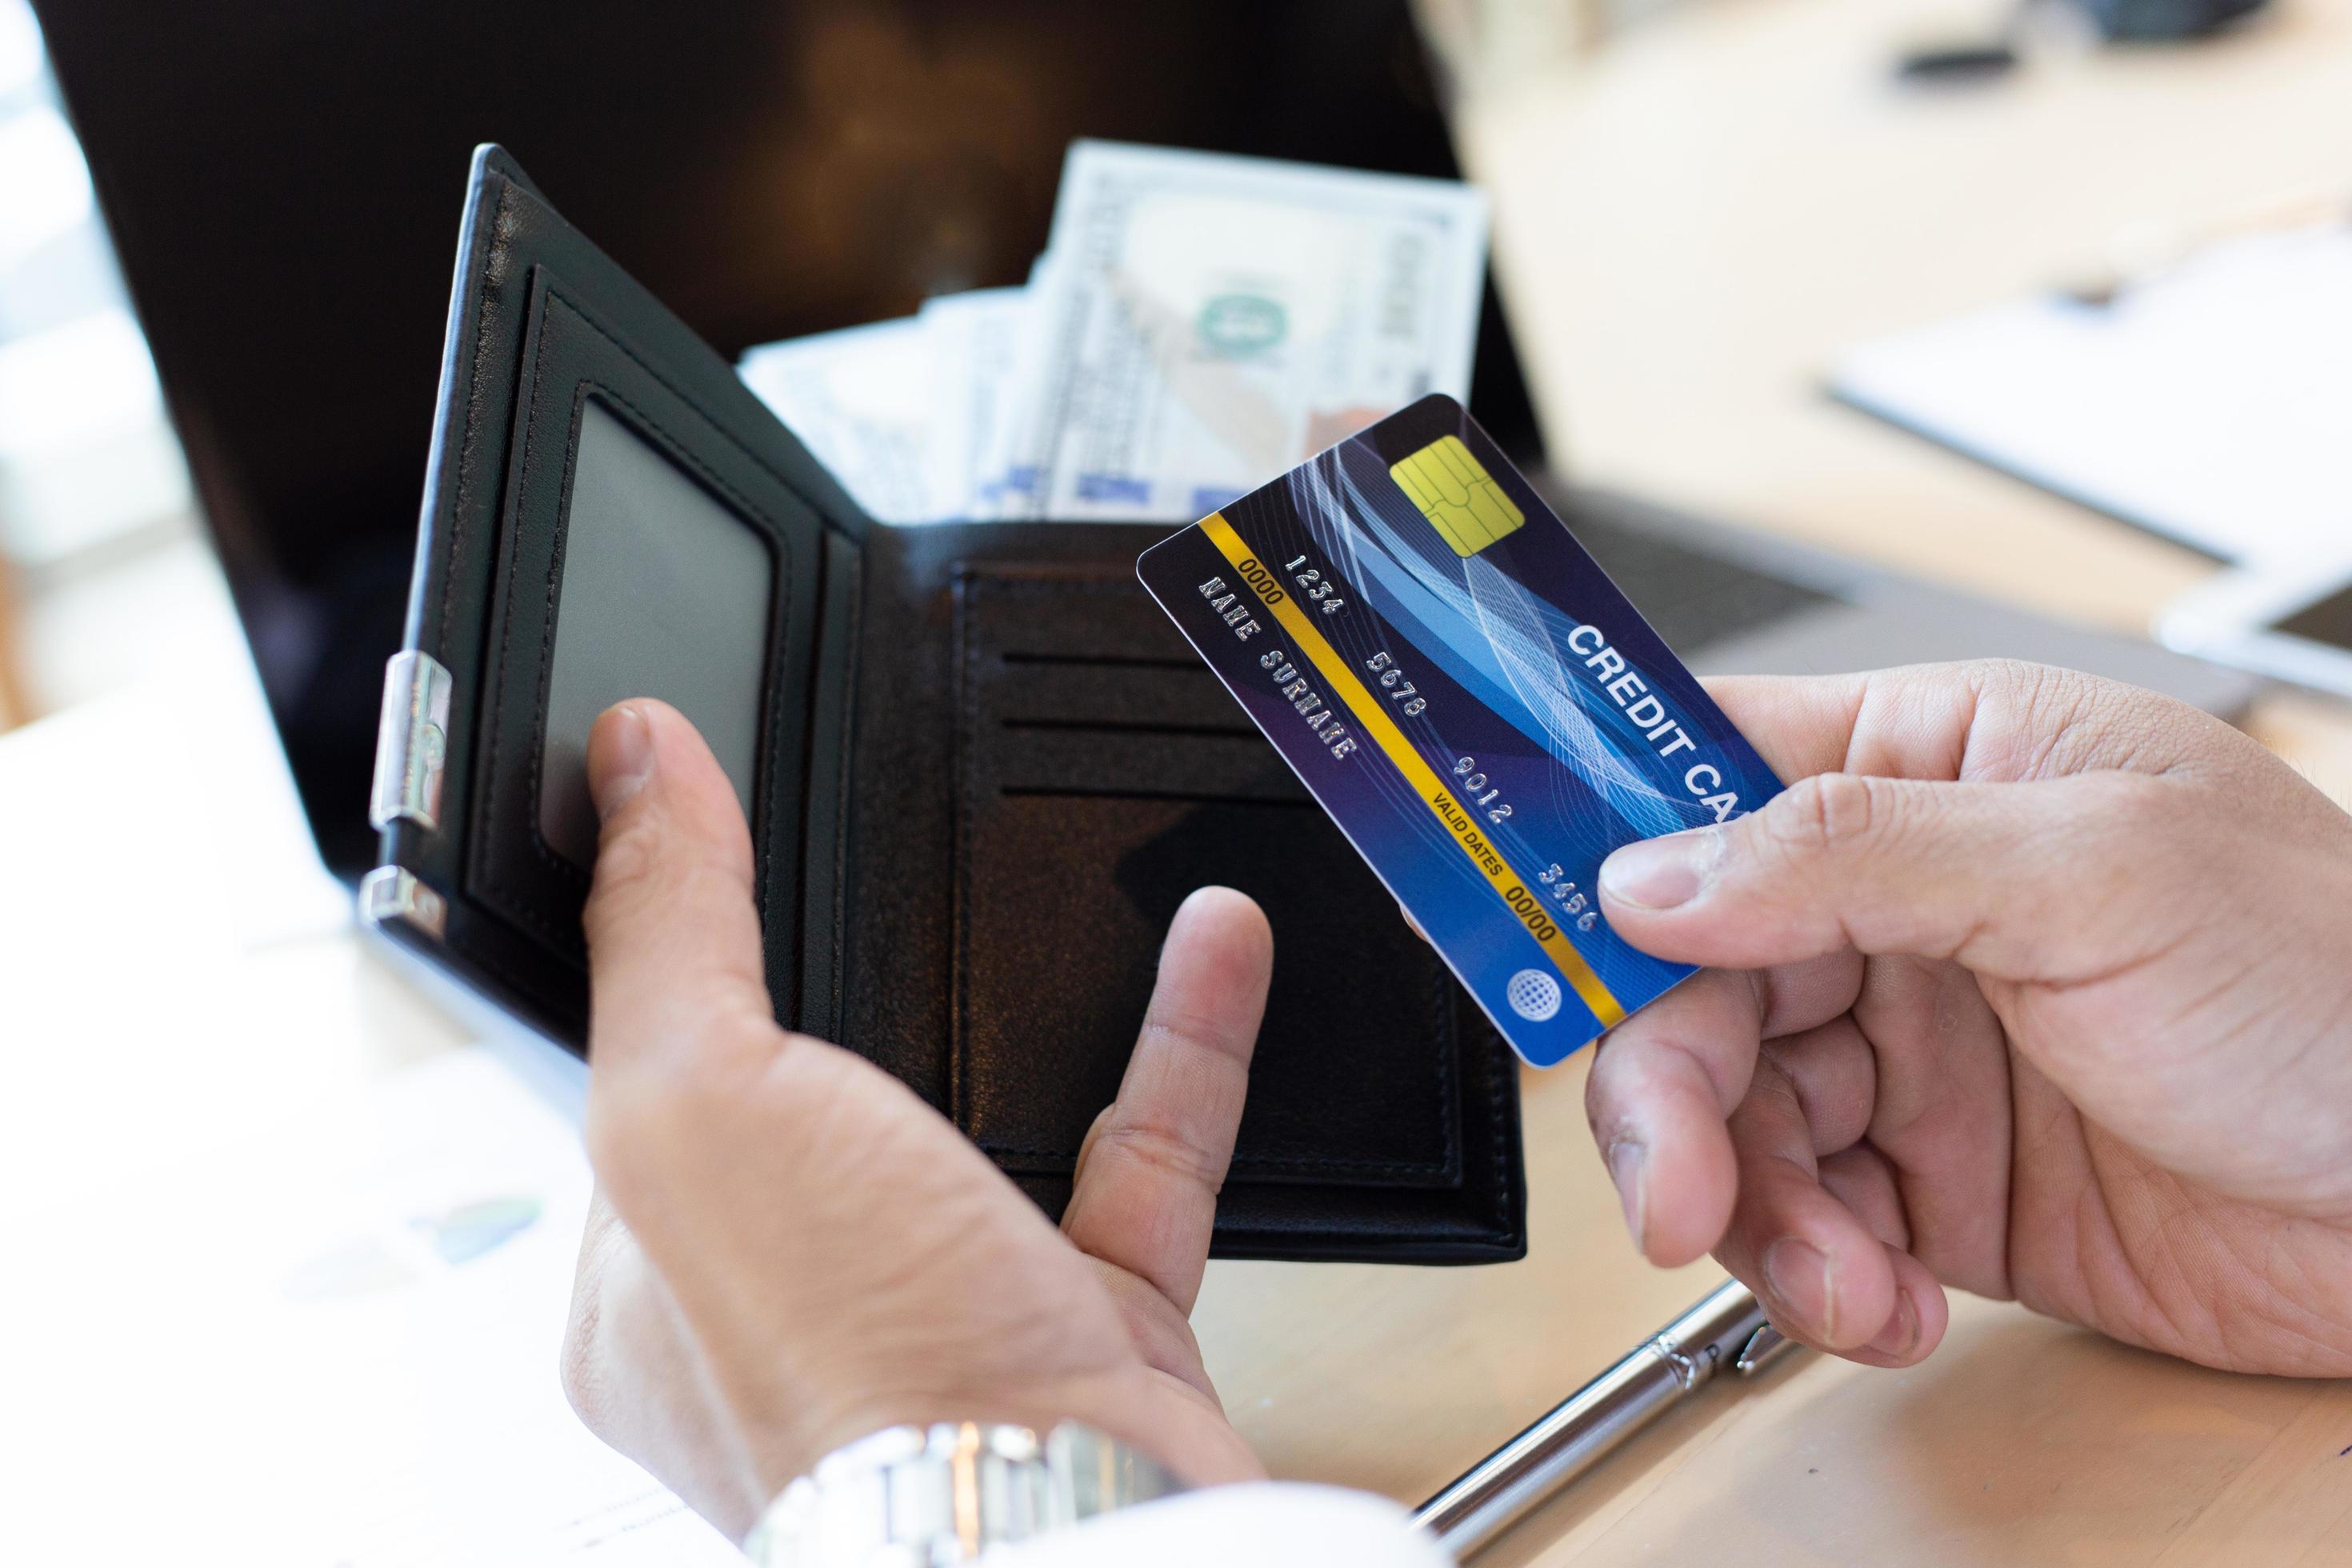 Devo parcelar a fatura do cartão de crédito? (Imagem: vecteezy)